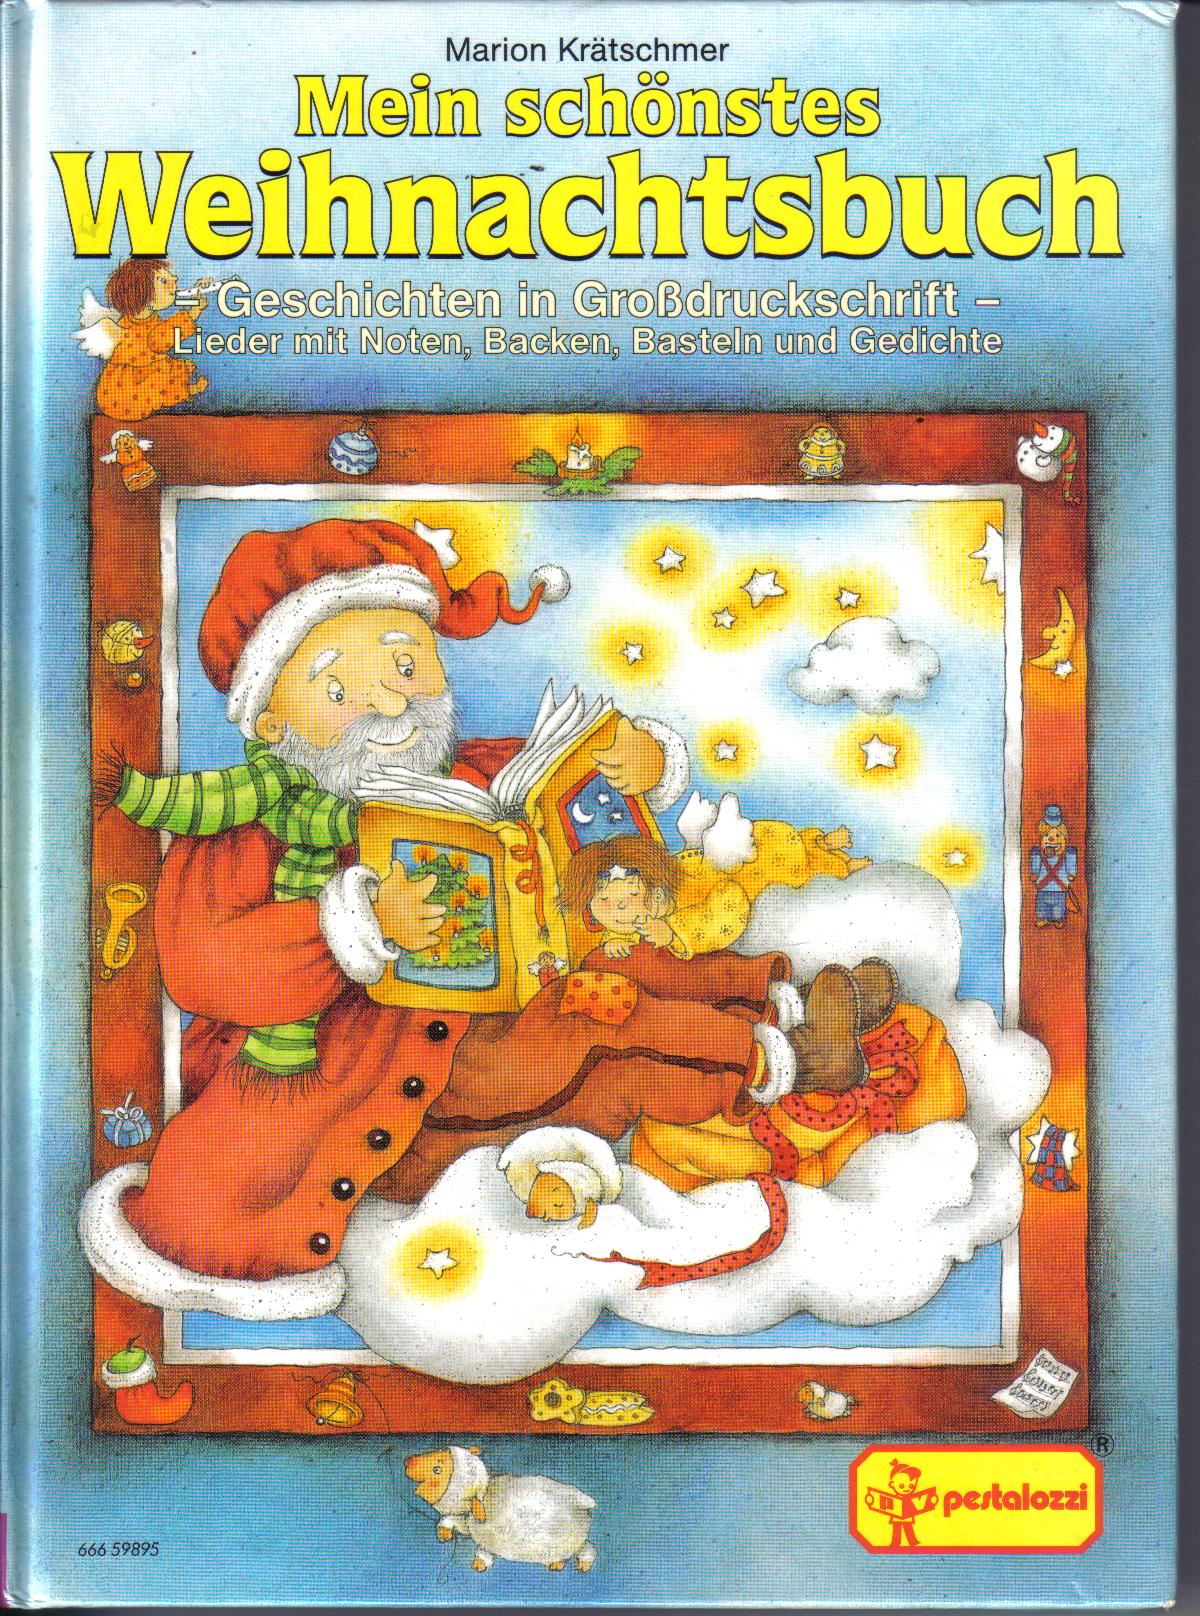 Mein schoenstes WeihnachtsbuchMarion Kraetschmer